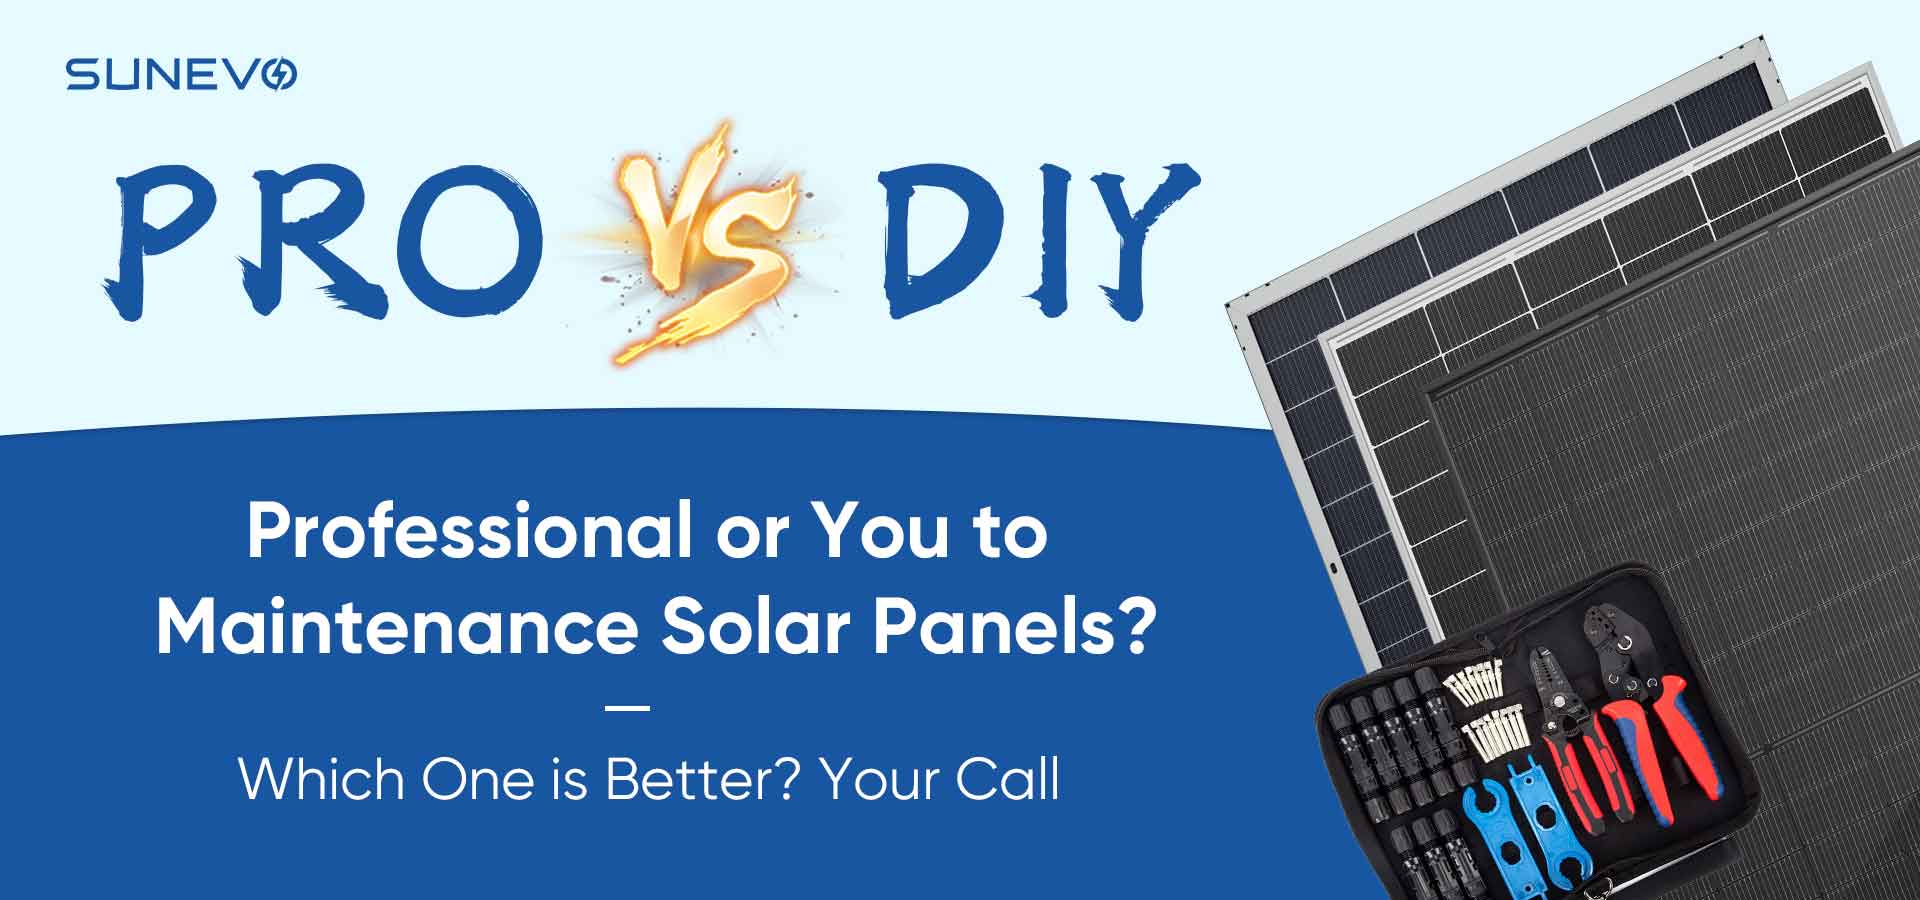 El debate: mantenimiento solar profesional versus cuidado de bricolaje